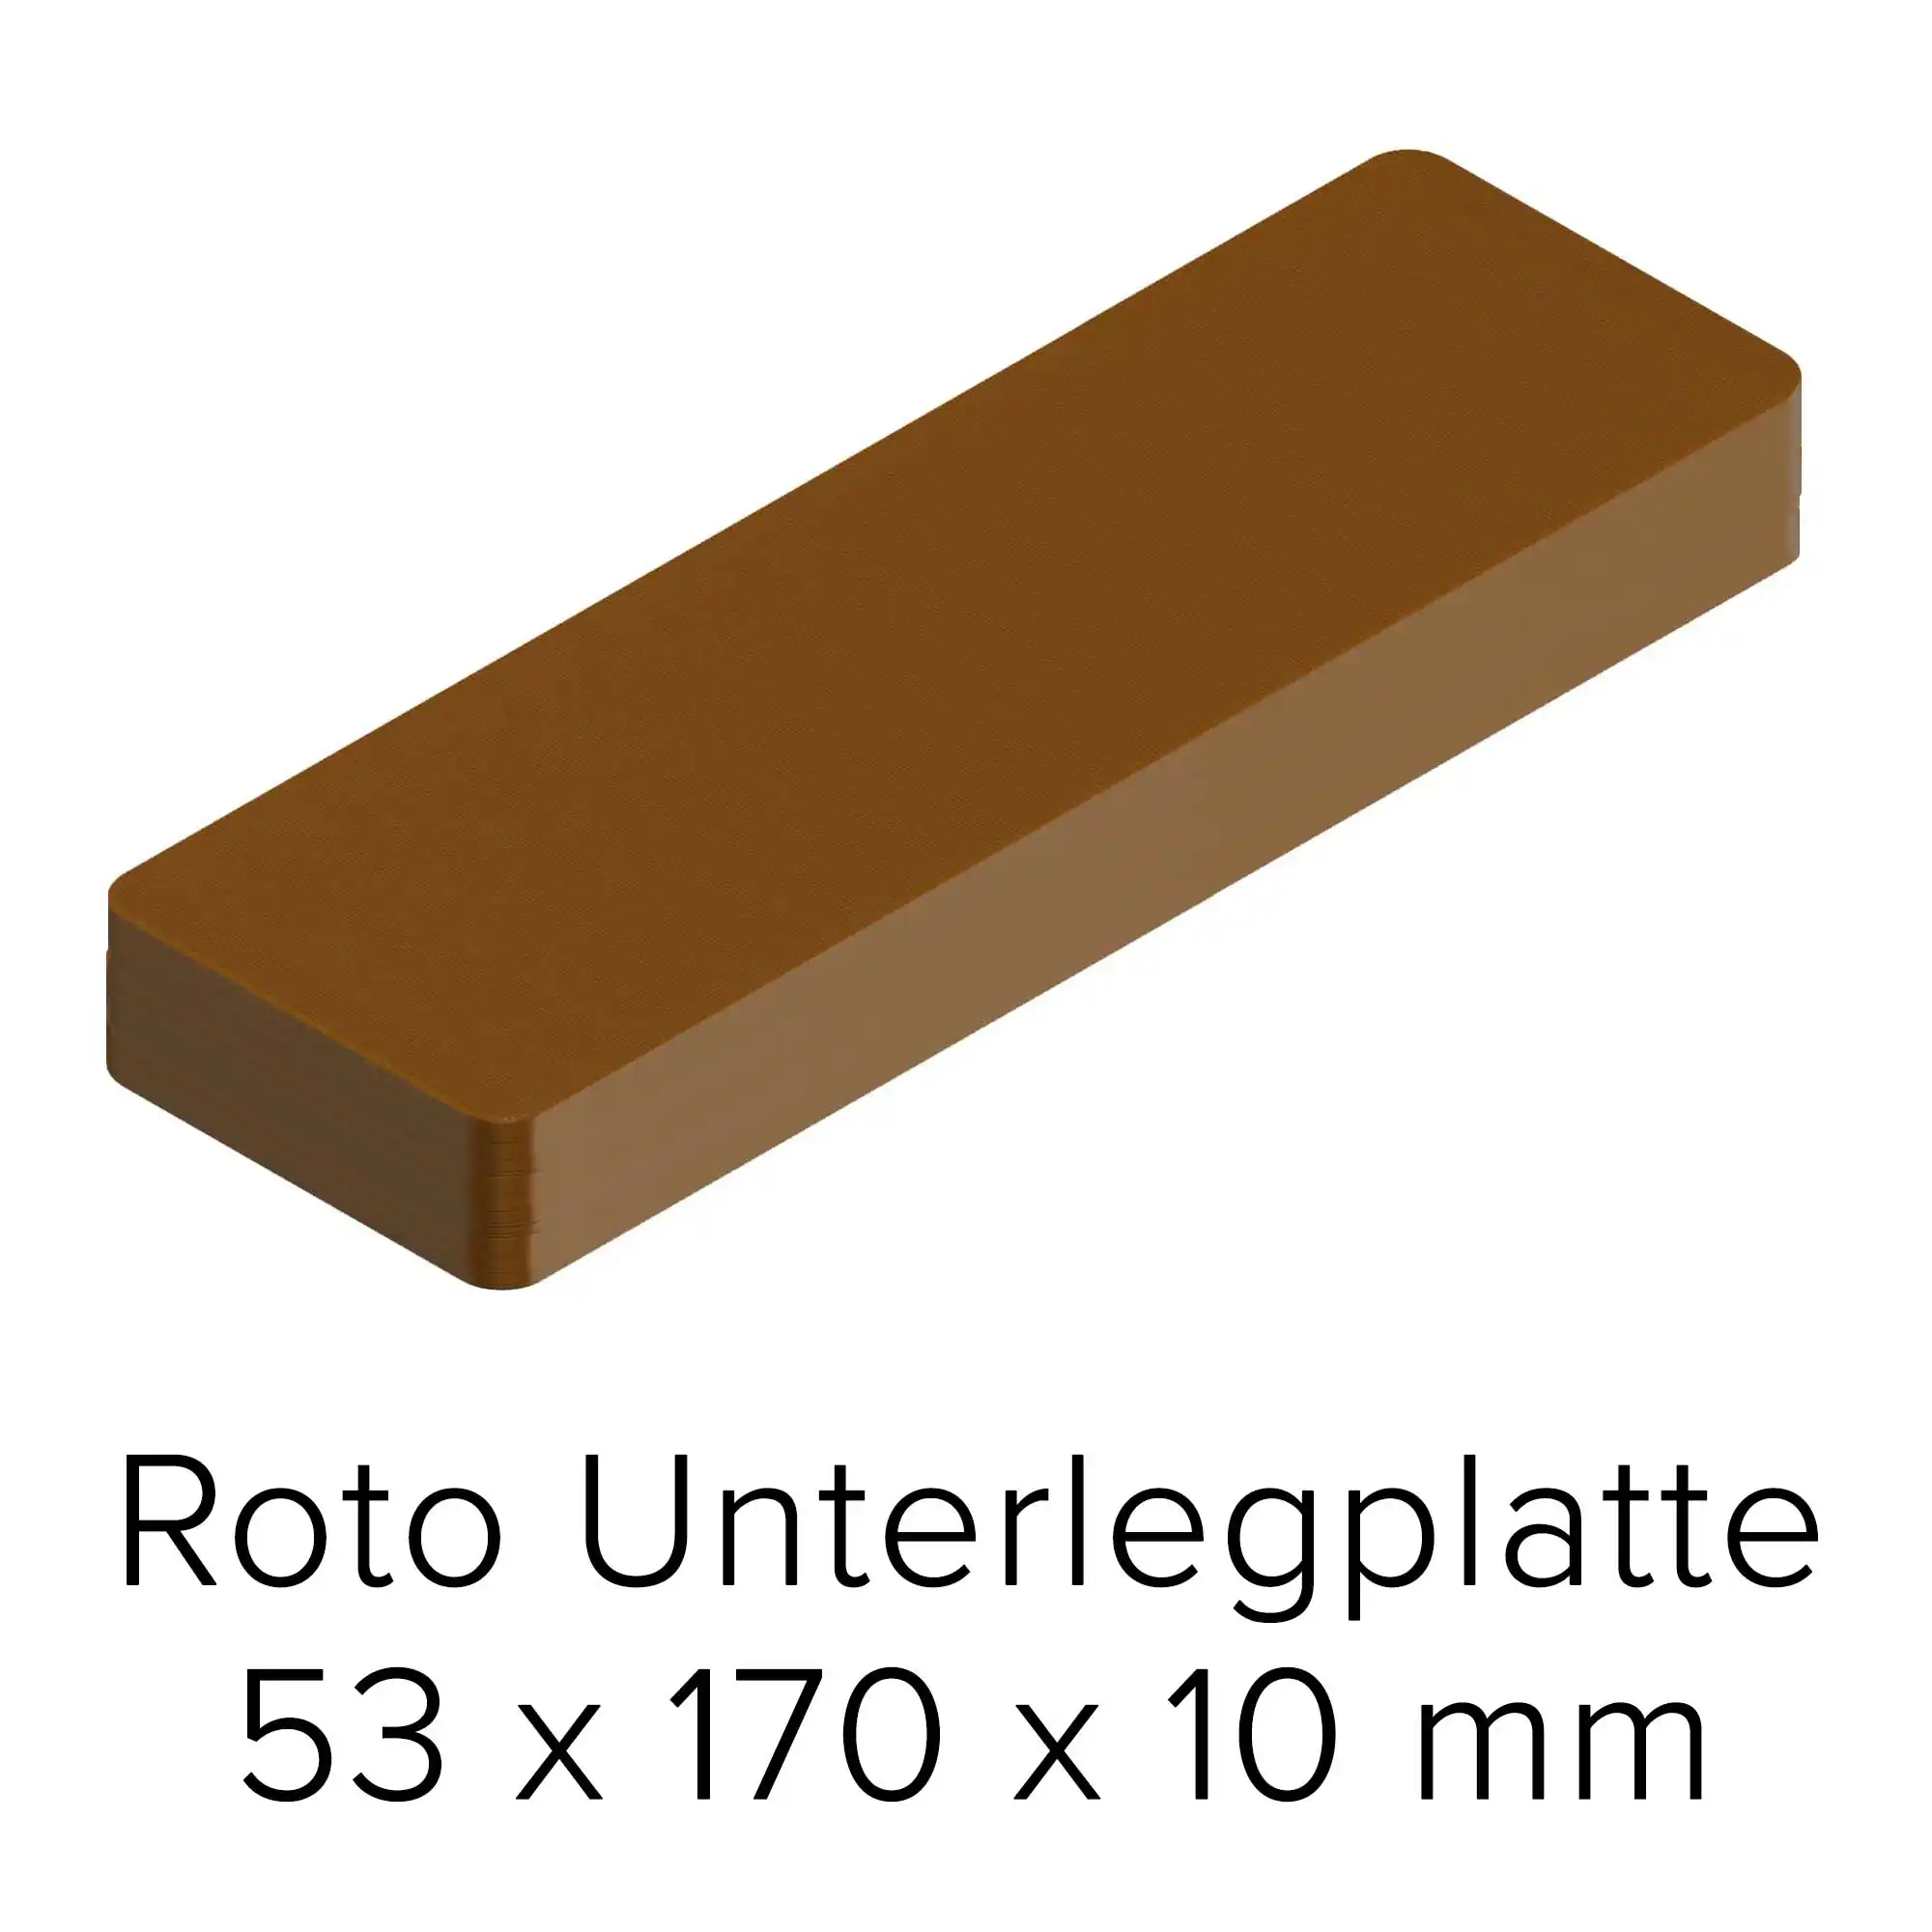 Unterlegplatte Roto 53 x 170 x 10 mm braun 100 Stück